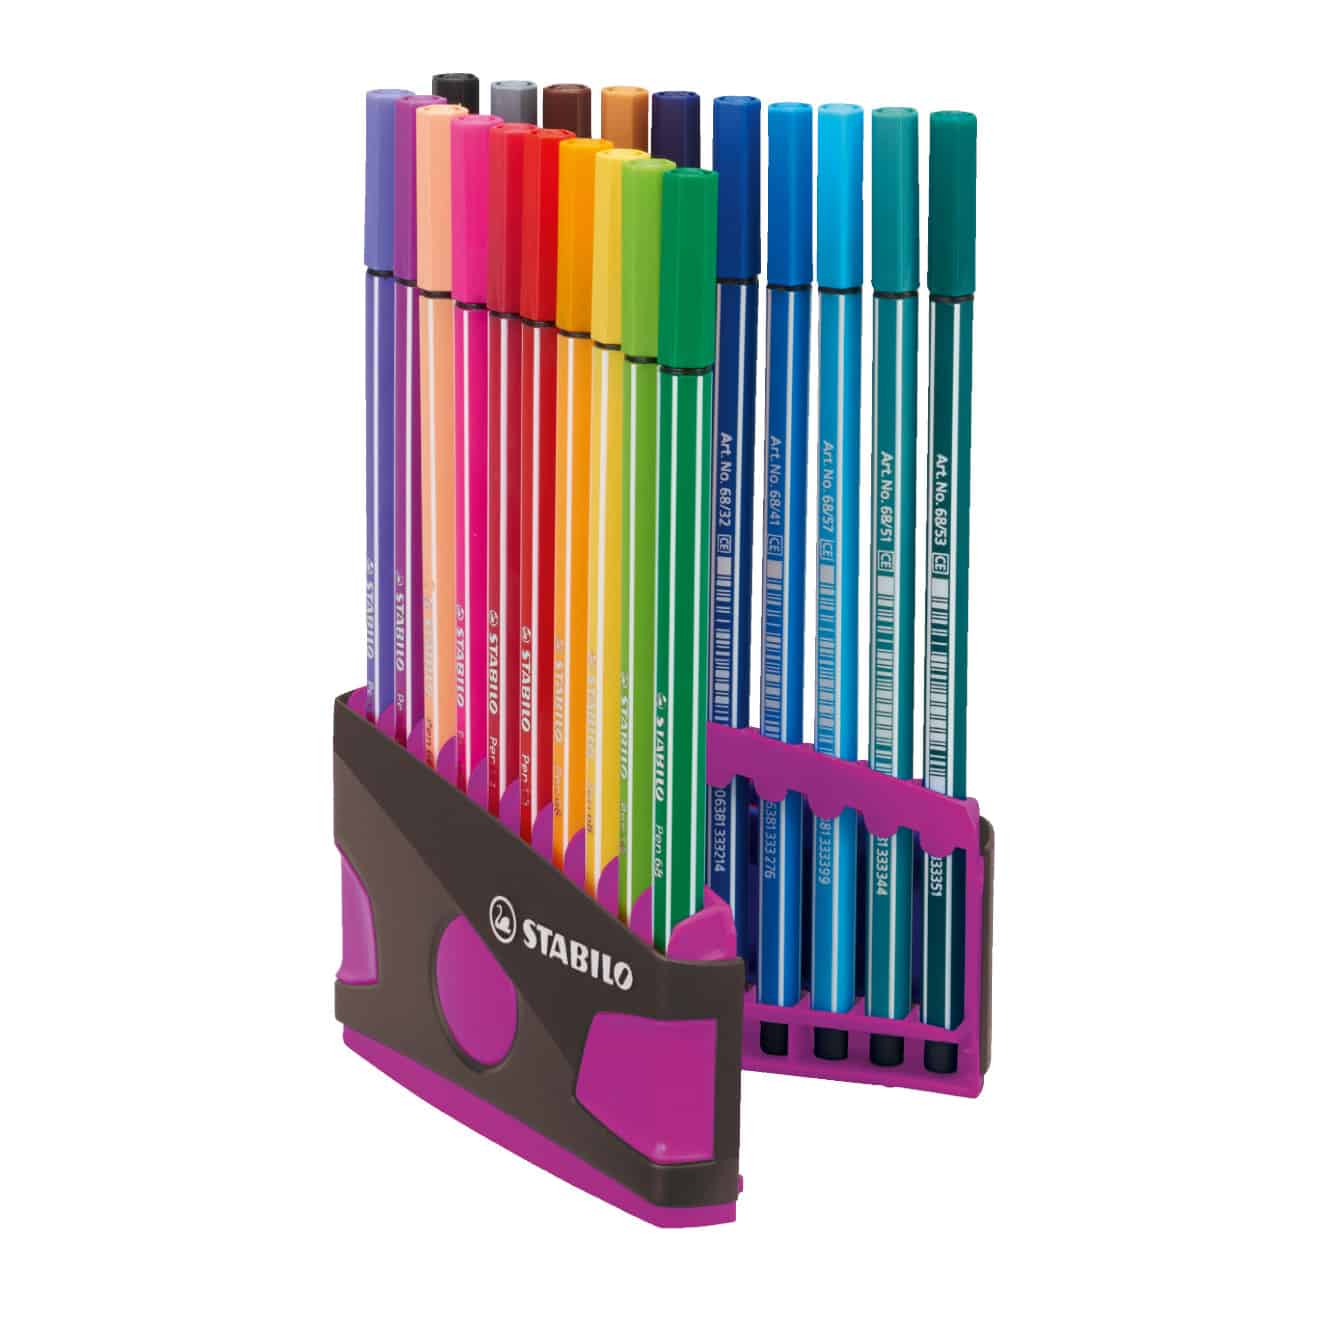 Fantastisch Trottoir rechtdoor STABILO Pen 68 viltstift Colorparade 20 kleuren - Antraciet Roze